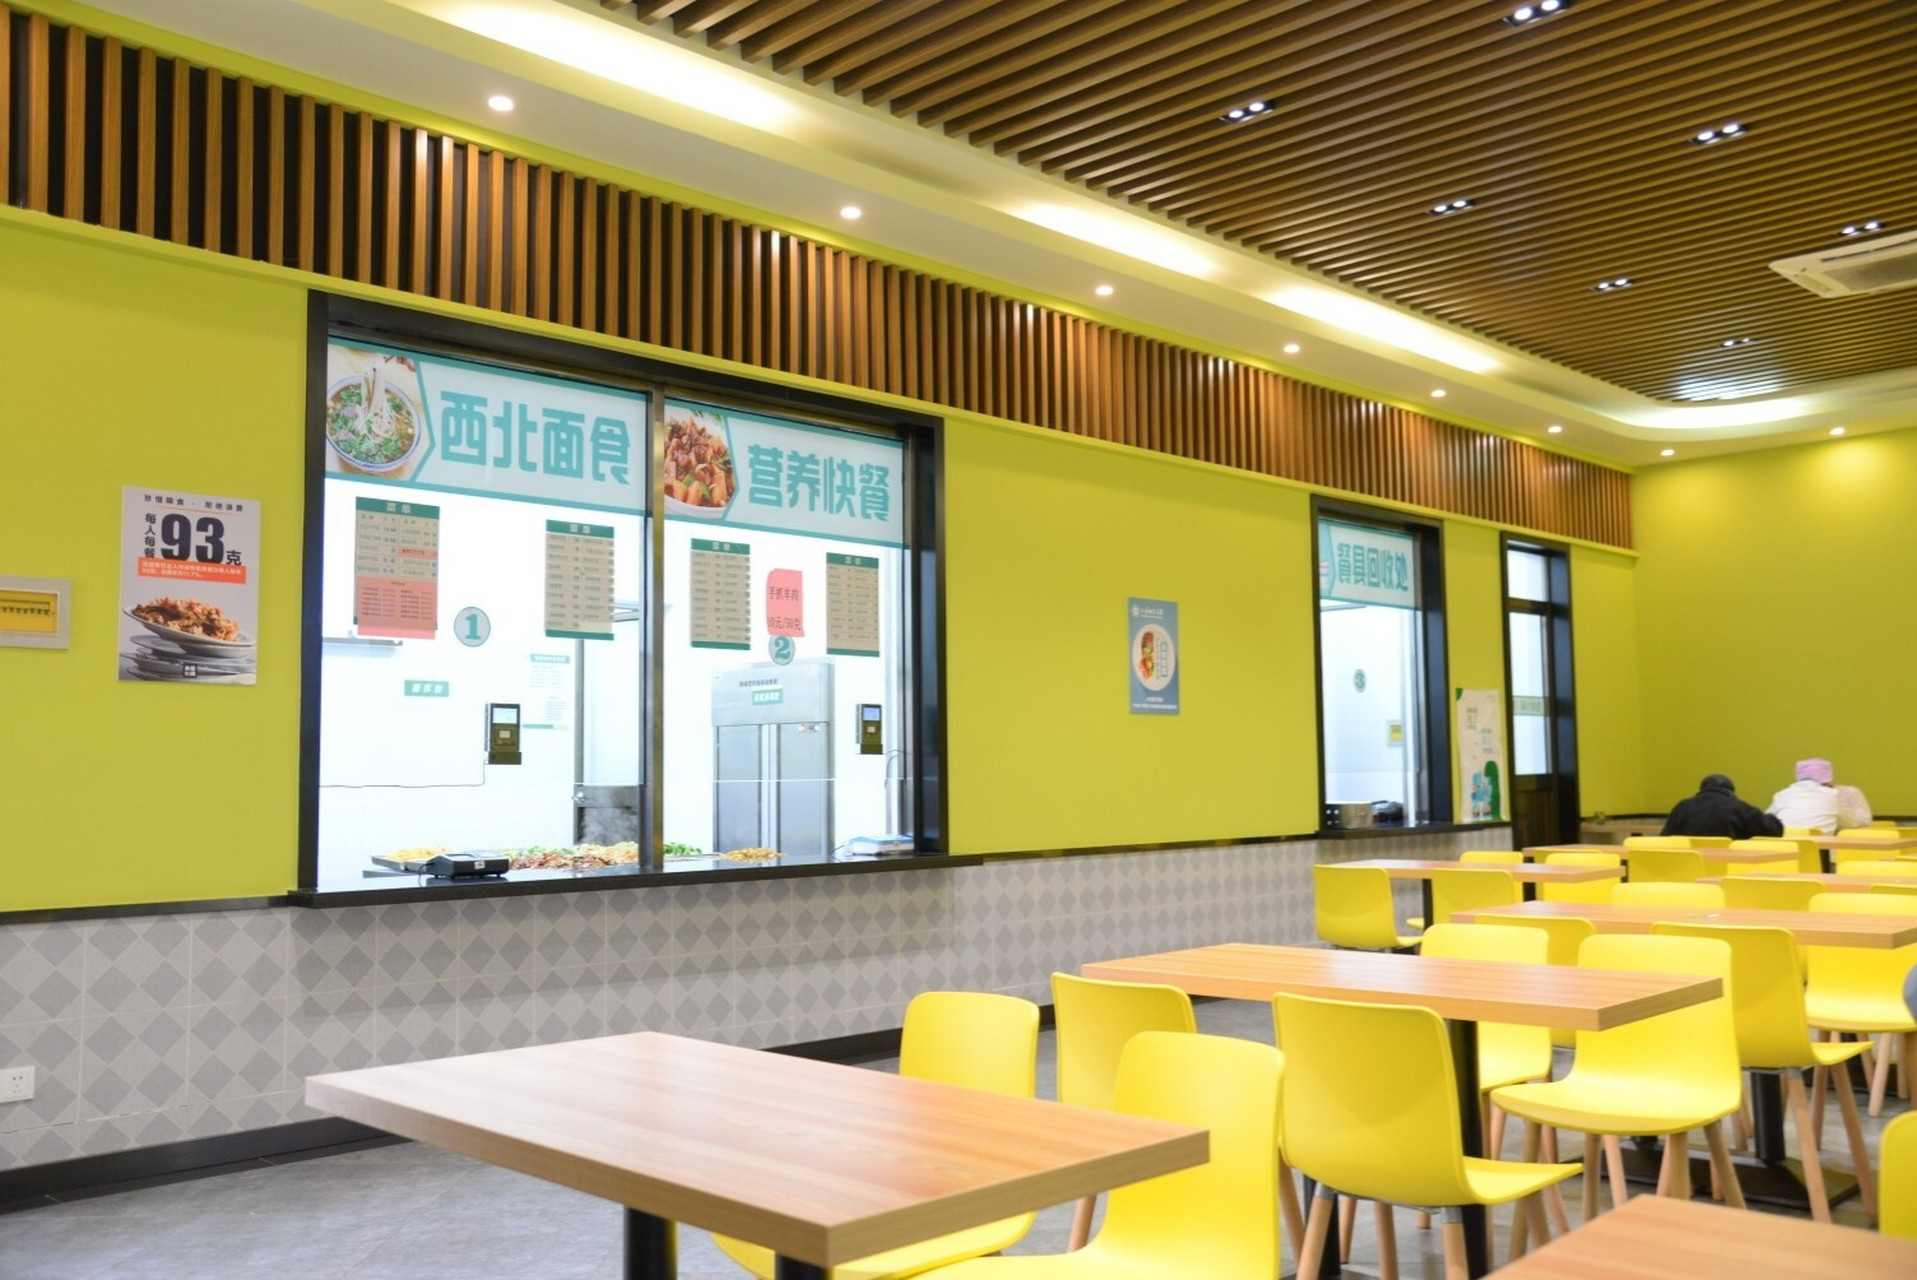 上海师范大学东部食堂解密 东部有四个食堂:紫薇美食苑,风味餐厅,西北